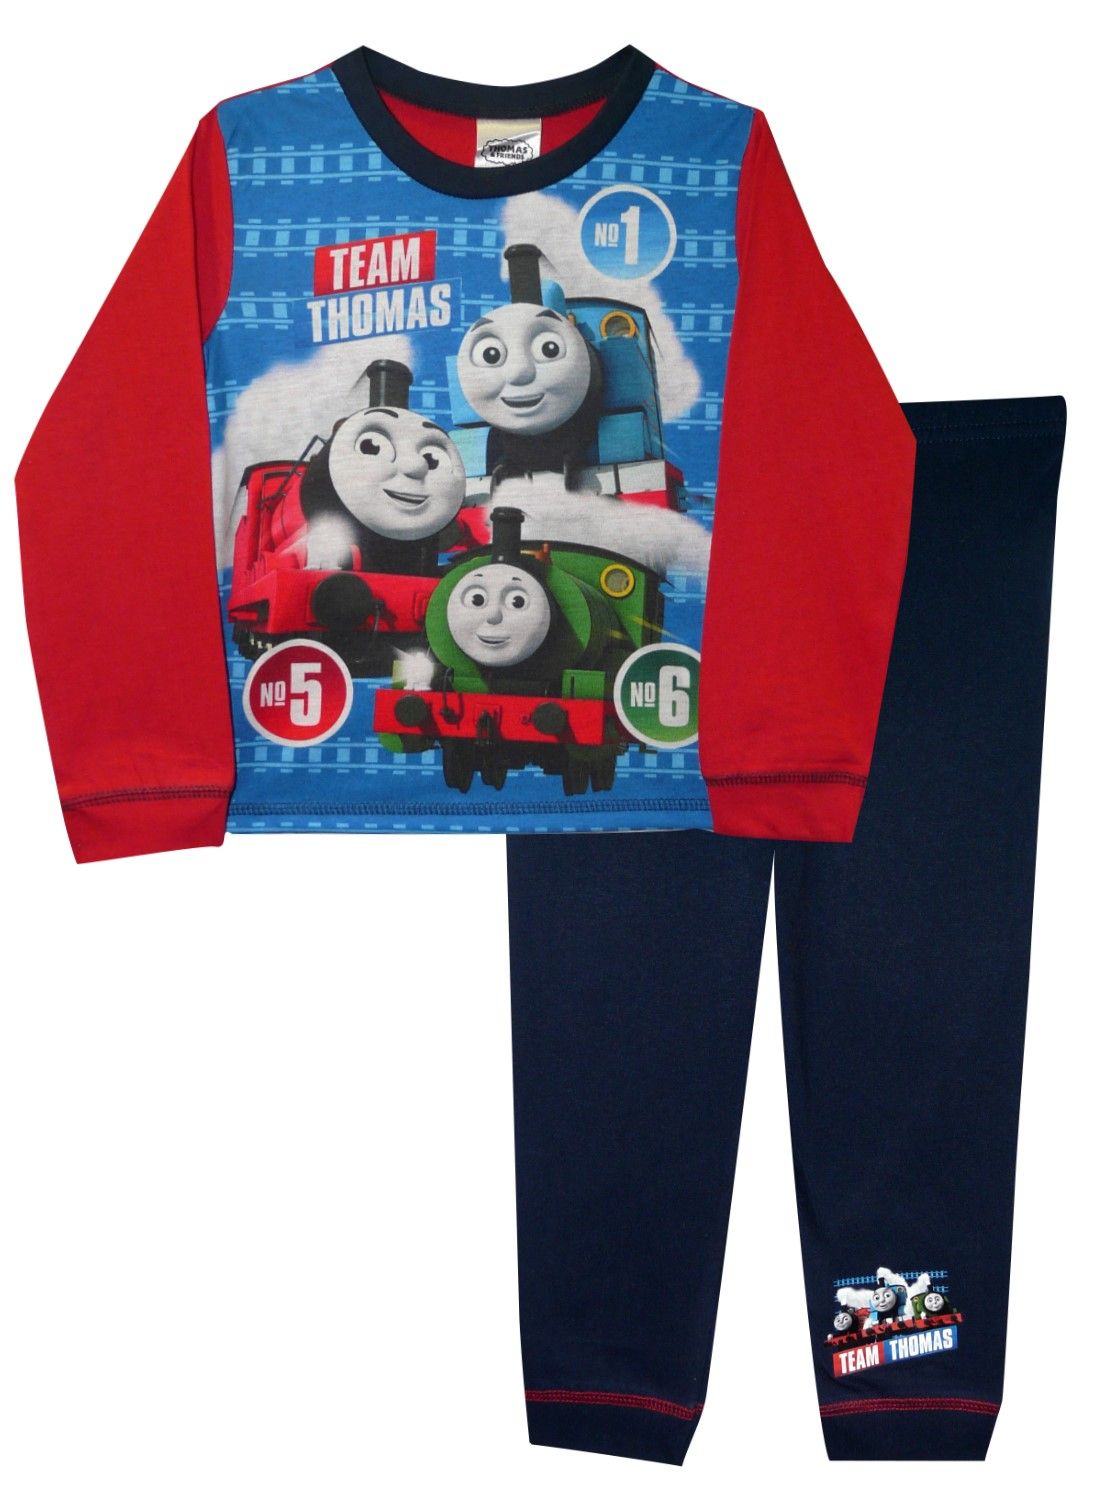 Thomas the Tank Engine "Team Thomas" Boys Pyjamas